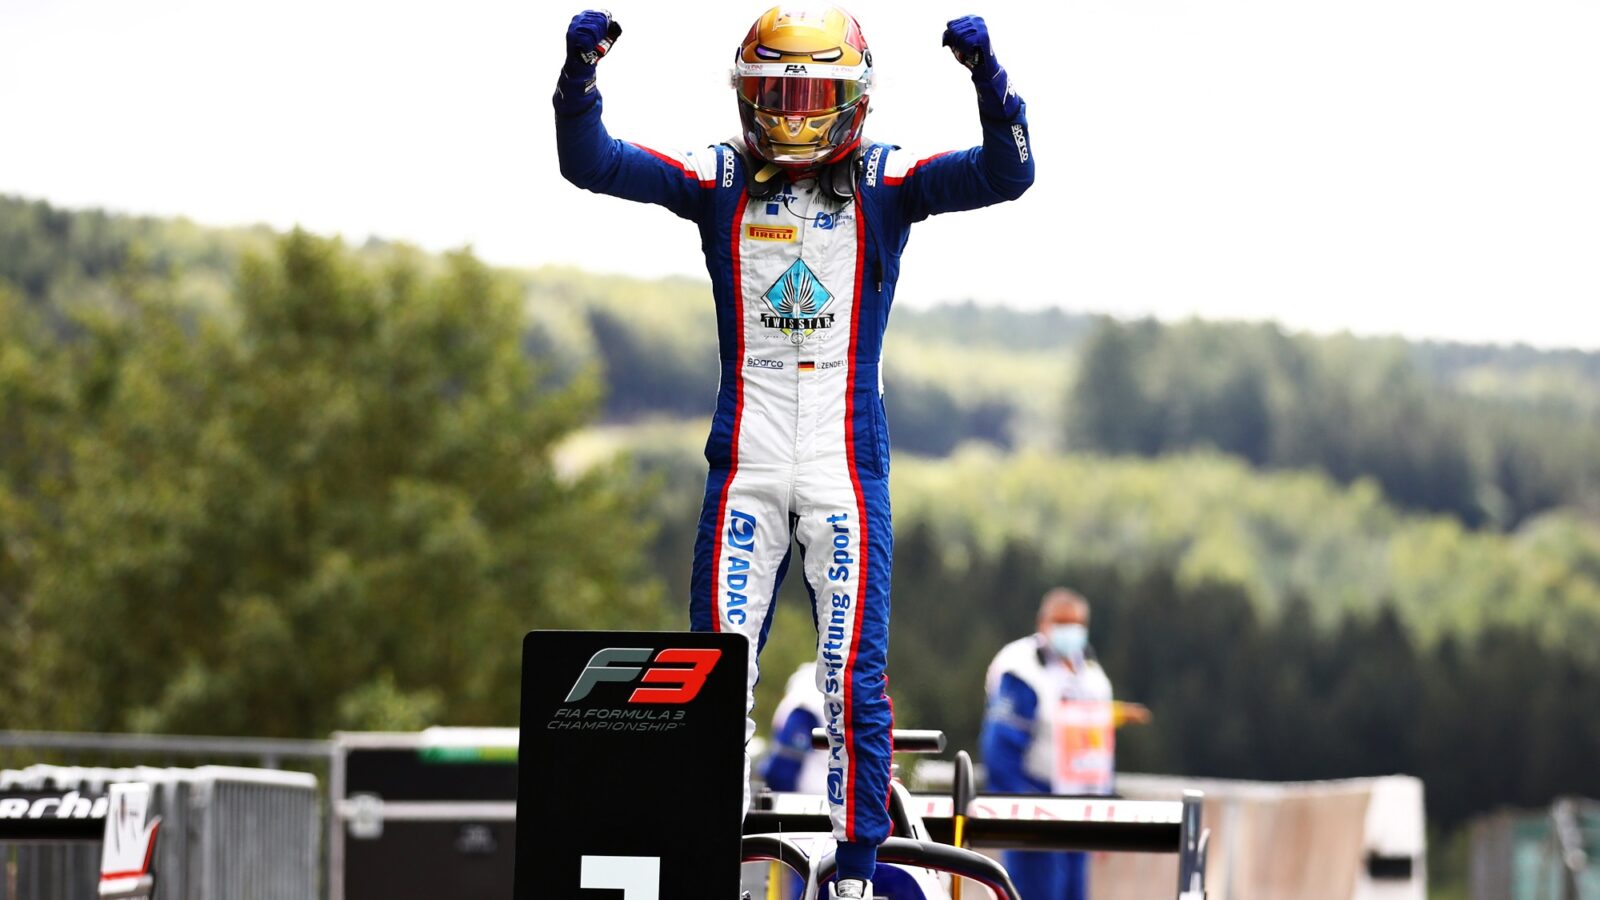 Formel-3: Zendeli rast zu dominantem ersten F3-Sieg